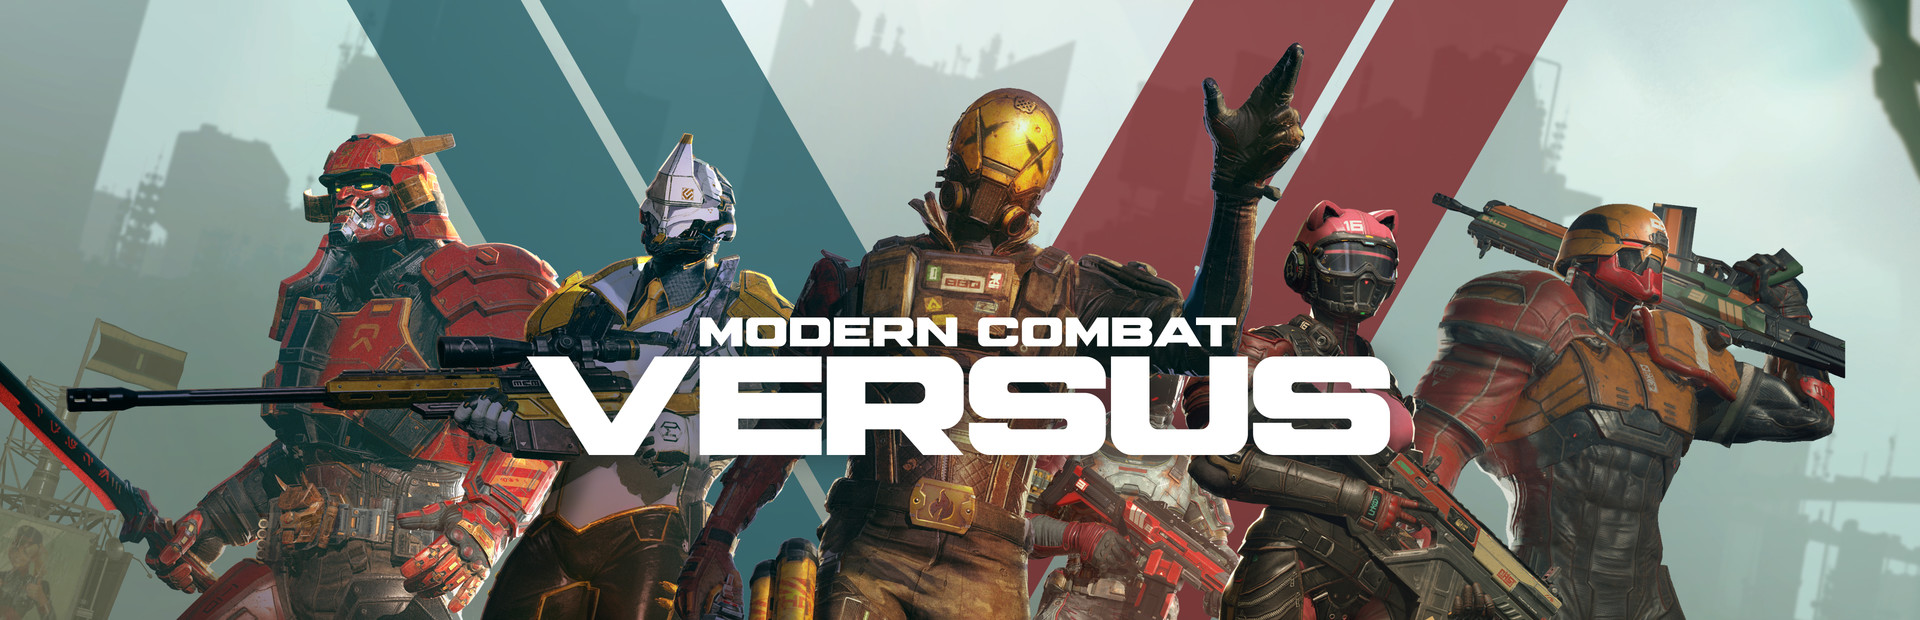 modern combat versus practice new heroes